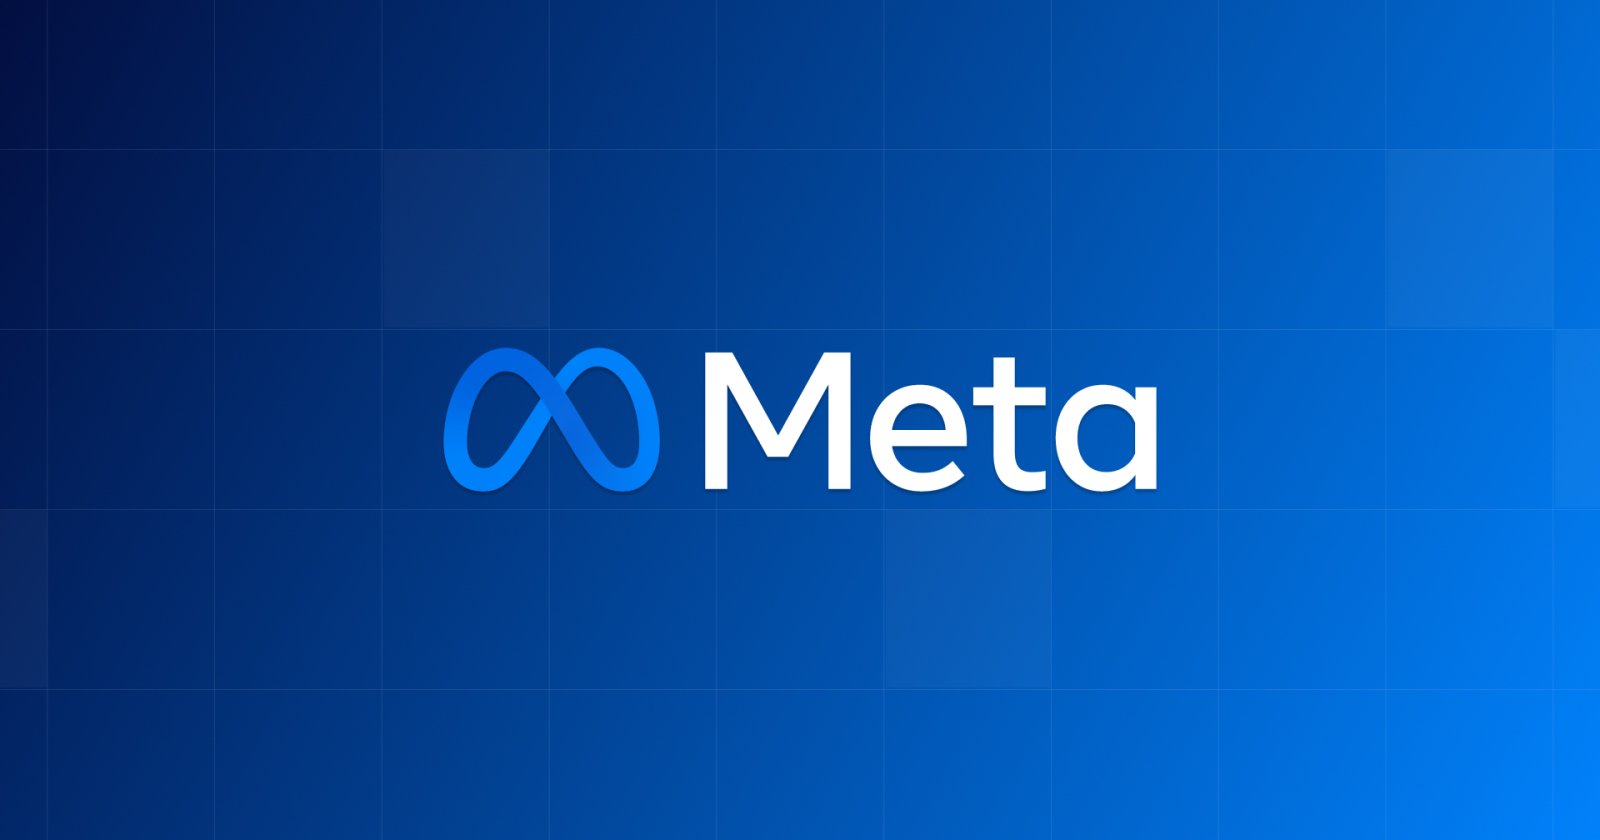 Meta ออกรายงานรายได้ไตรมาสที่ 3 ทำกำไรรวมสูงถึง 11,580 ล้านเหรียญ และเพิ่มขึ้น 164%